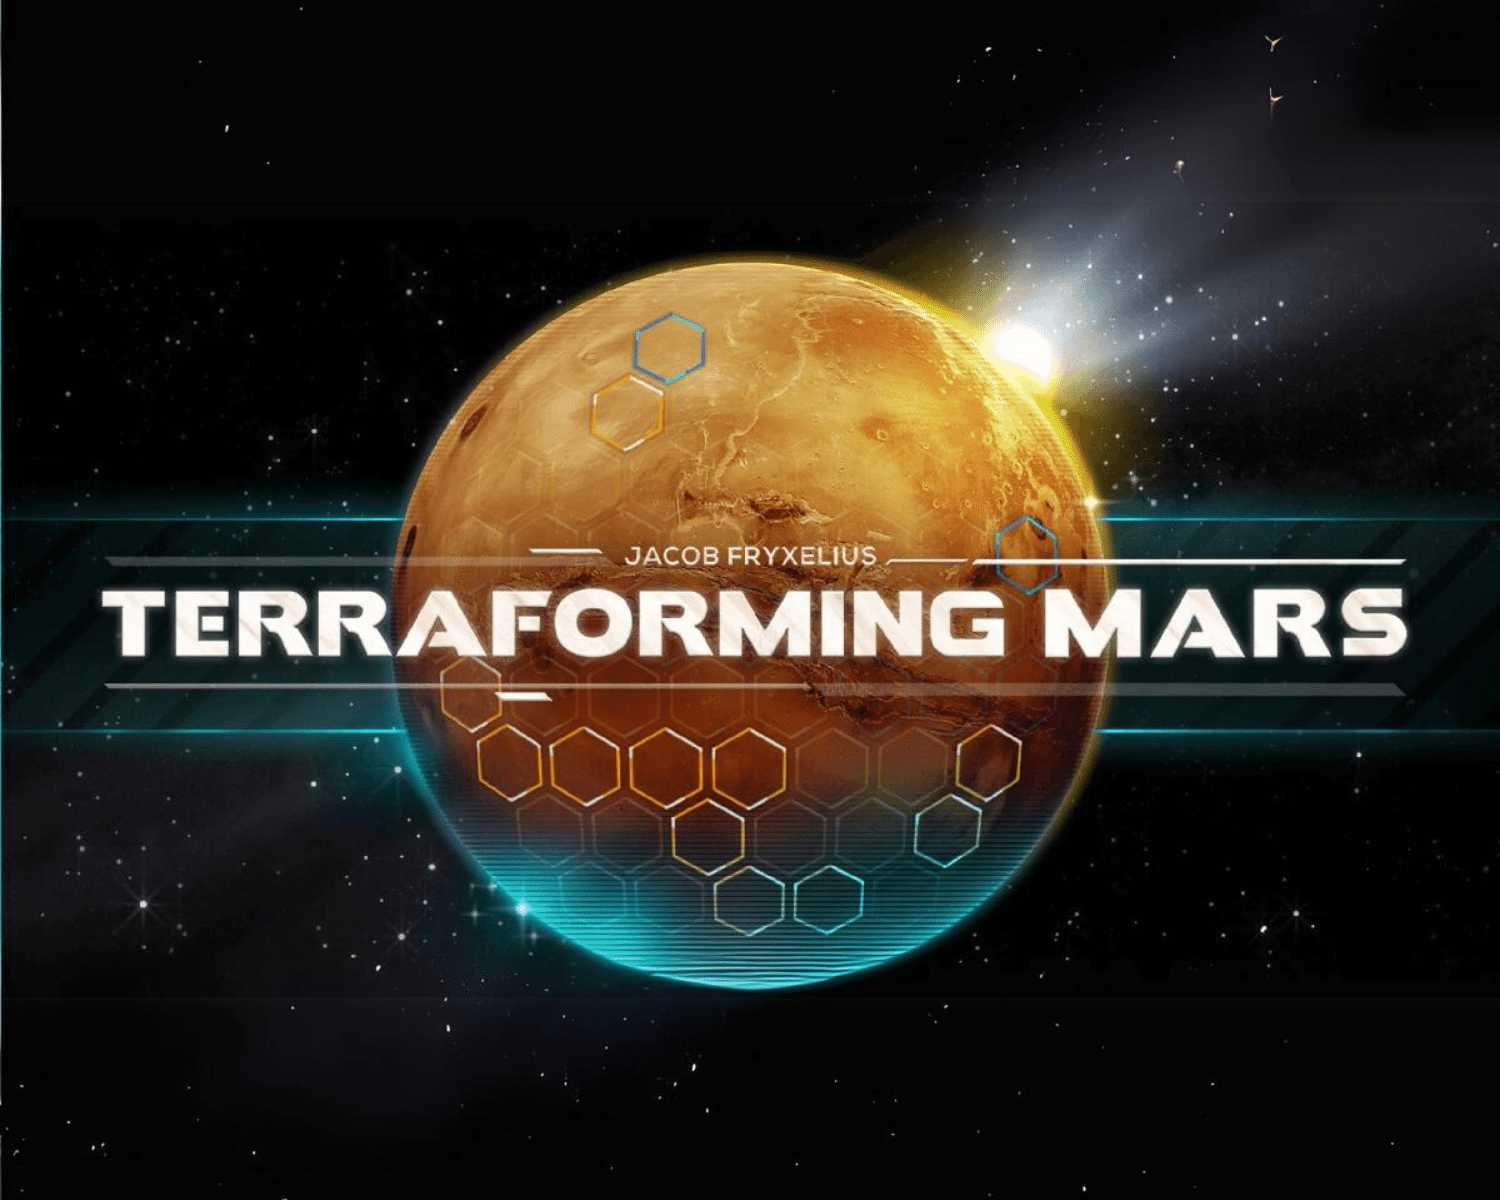 Couverture du jeu vidéo Terraforming Mars de Lucky Hammers